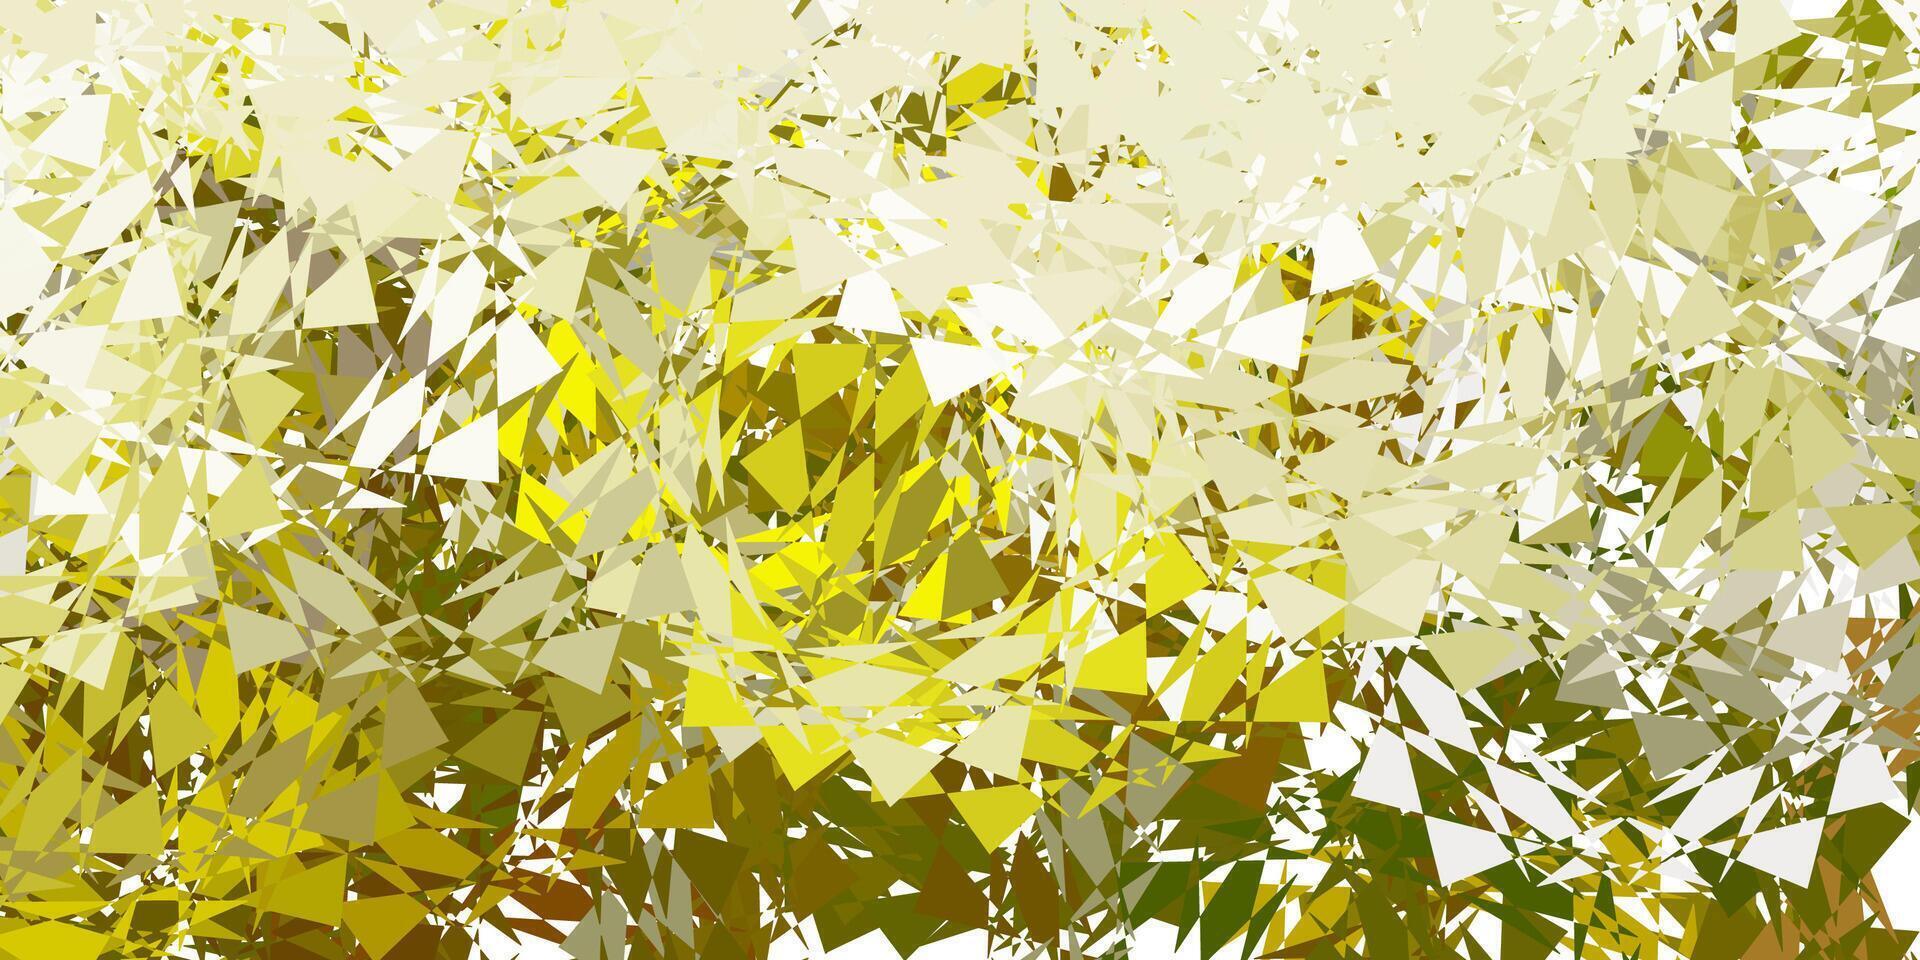 fond de vecteur vert foncé, jaune avec des formes polygonales.